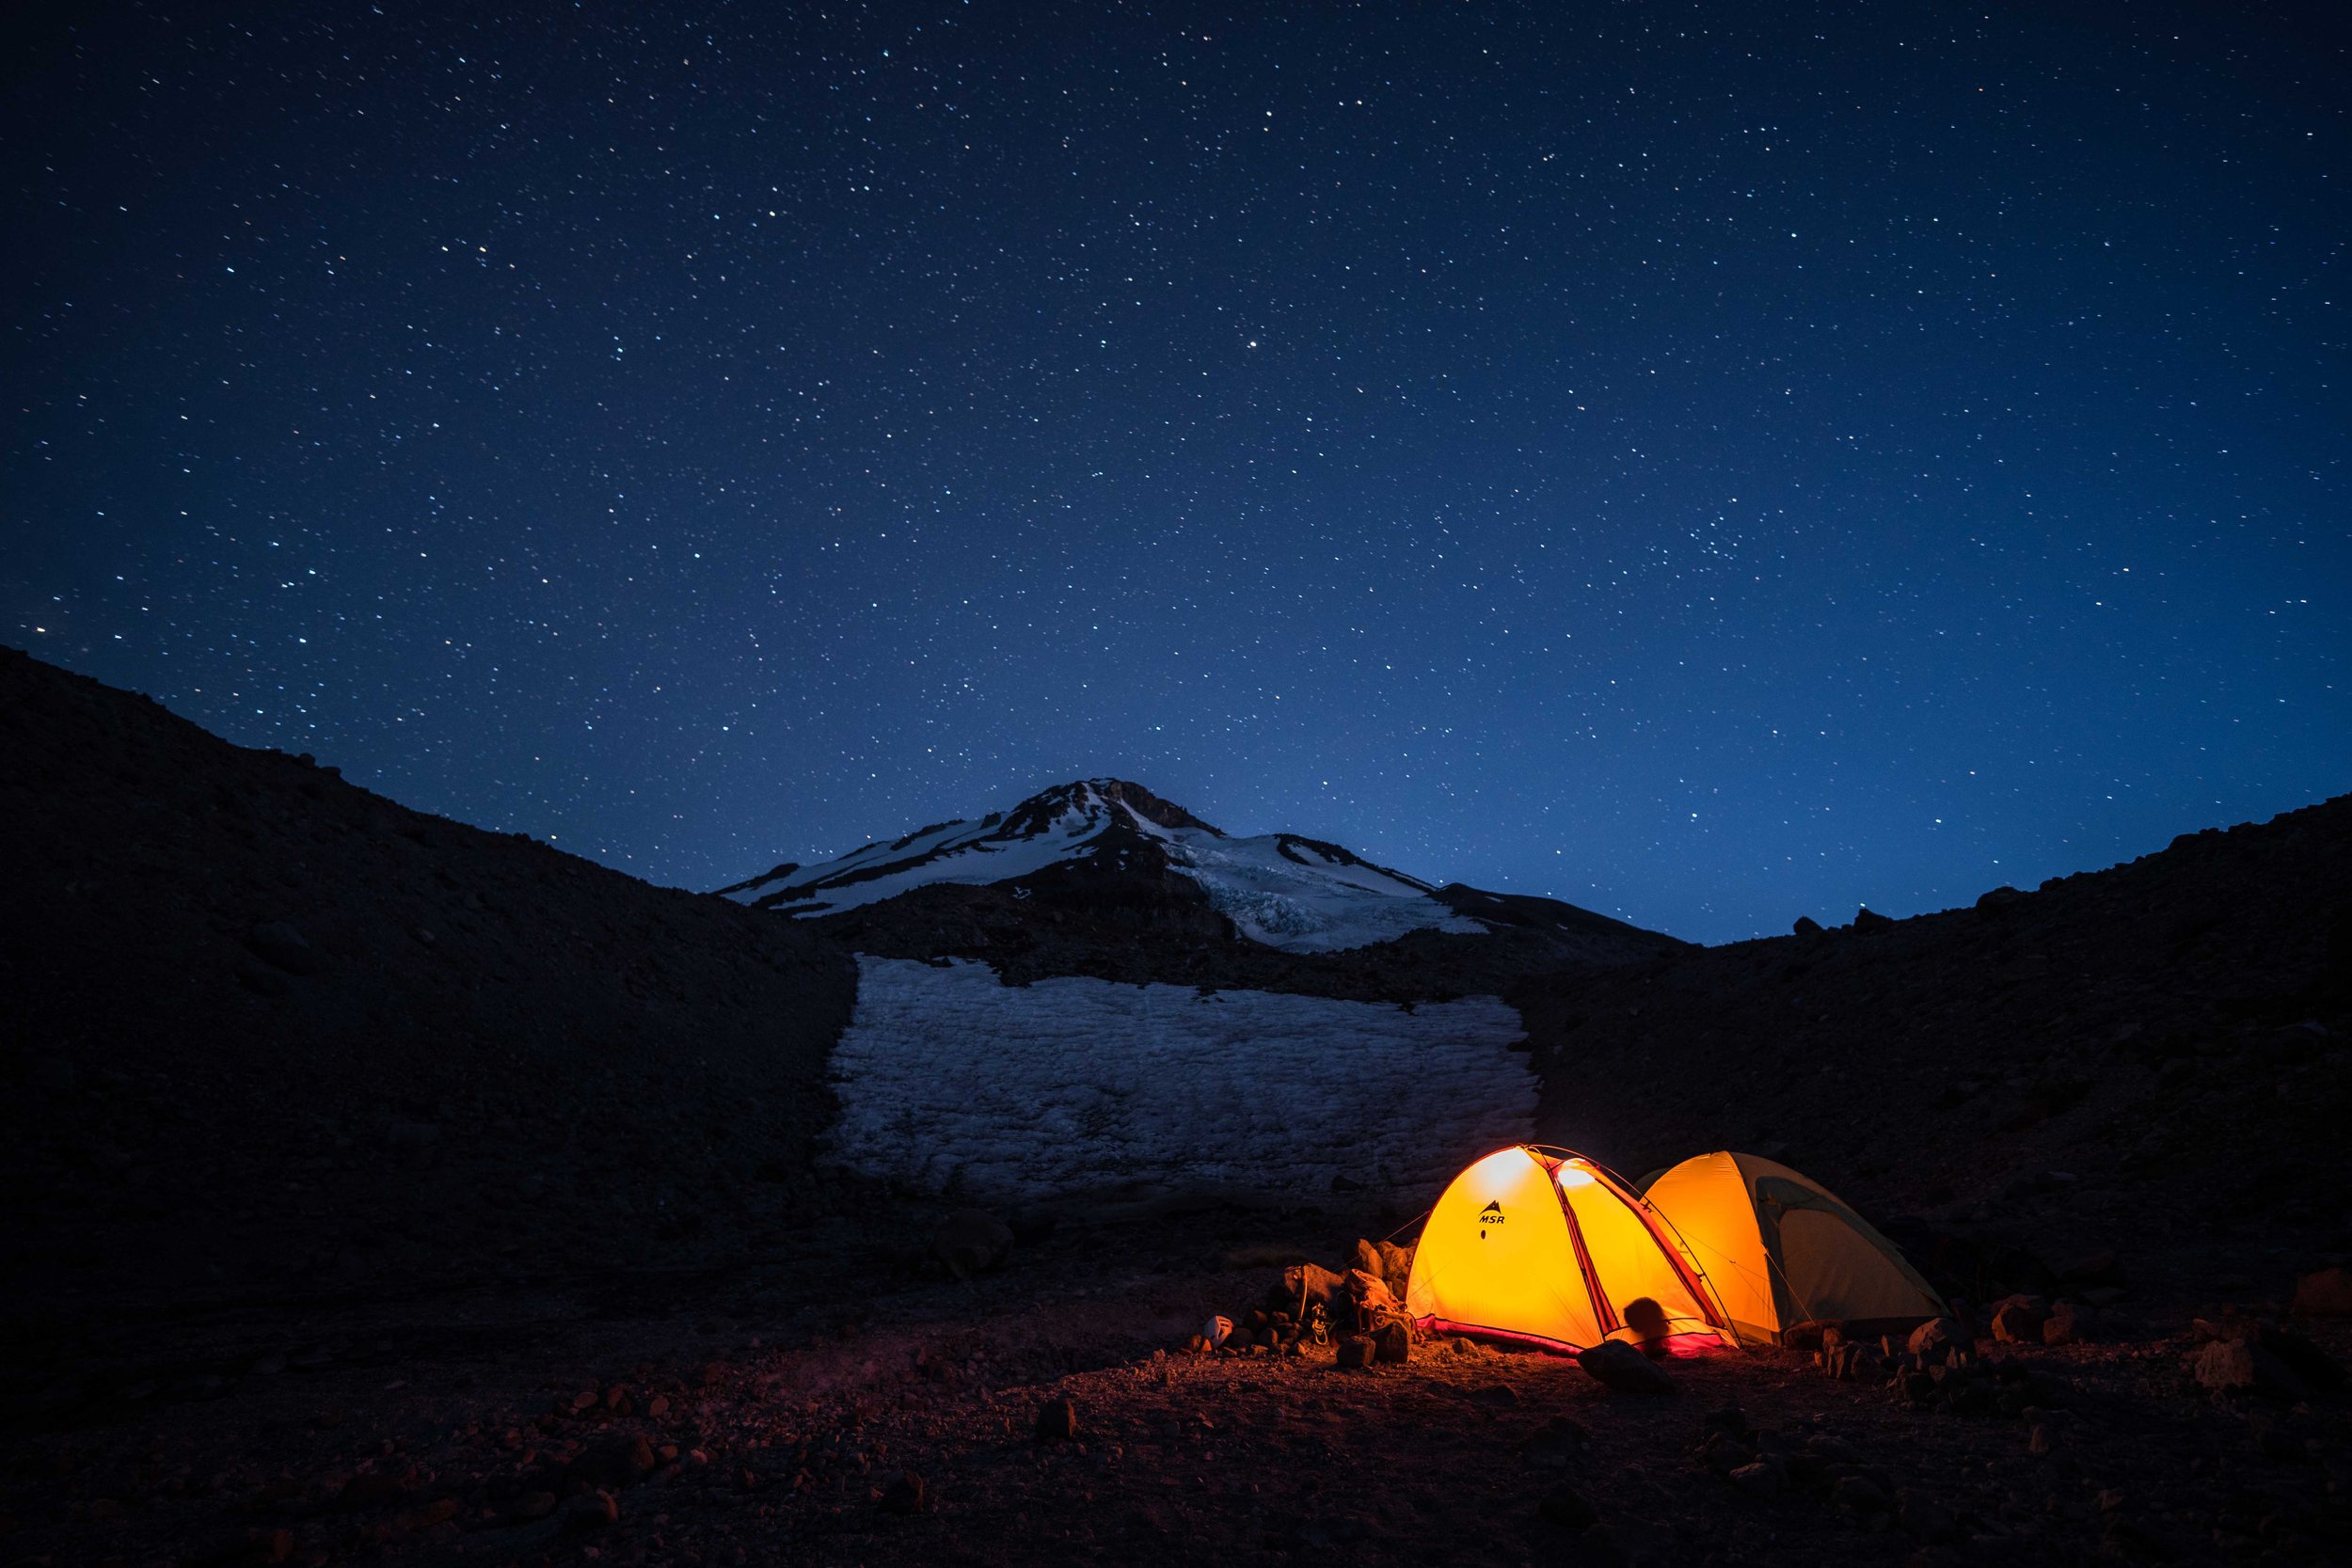 Hotlum base camp on Mount Shasta